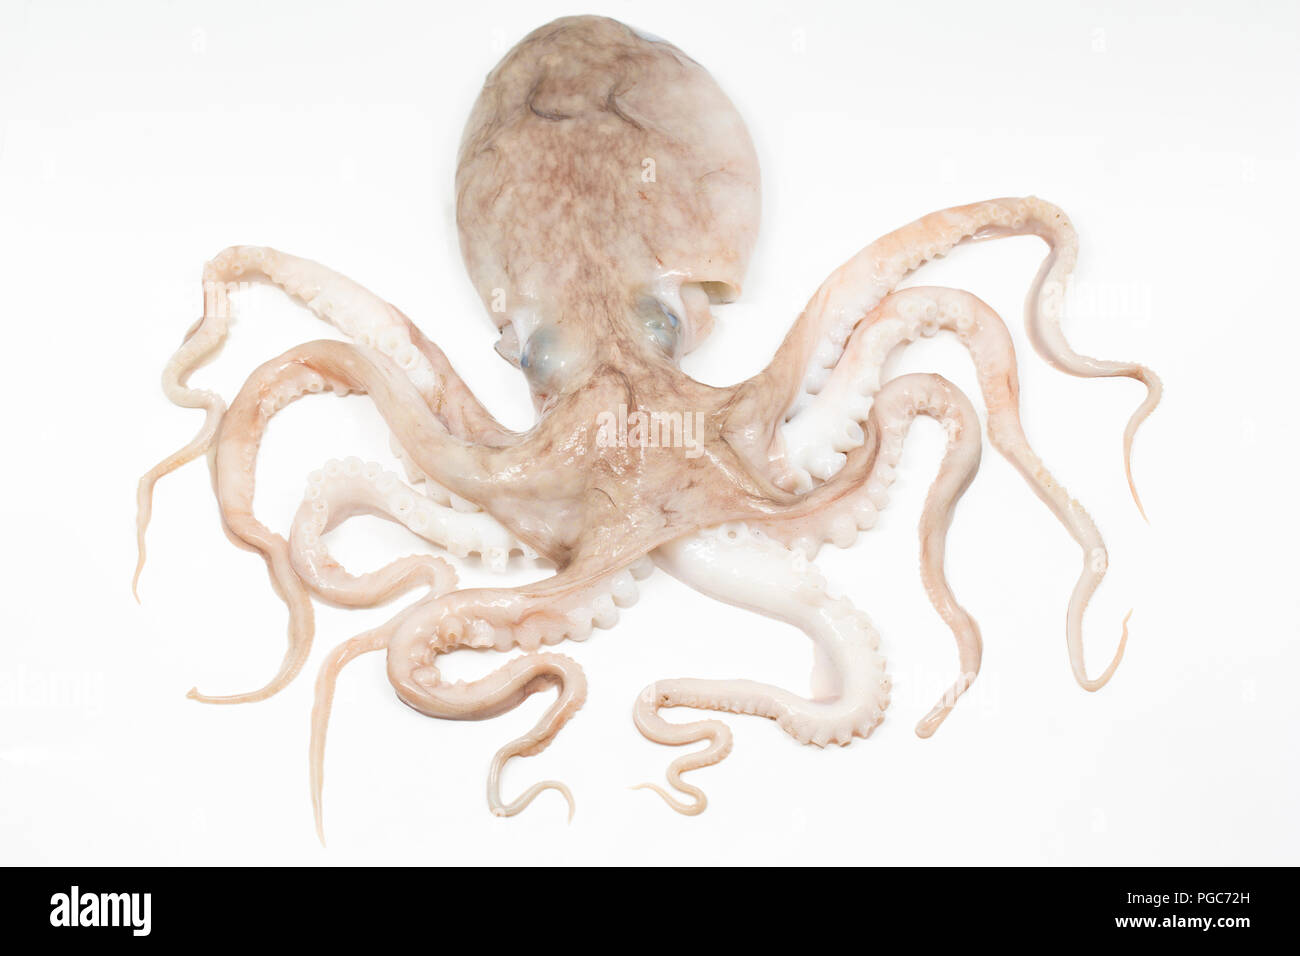 Une moindre ou recourbés, pieuvre, Eledone cirrhosa, qui a été pris dans un chalut dans les eaux britanniques et ont acheté à partir d'un comptoir de poissons dans un supermarché. Le l Banque D'Images